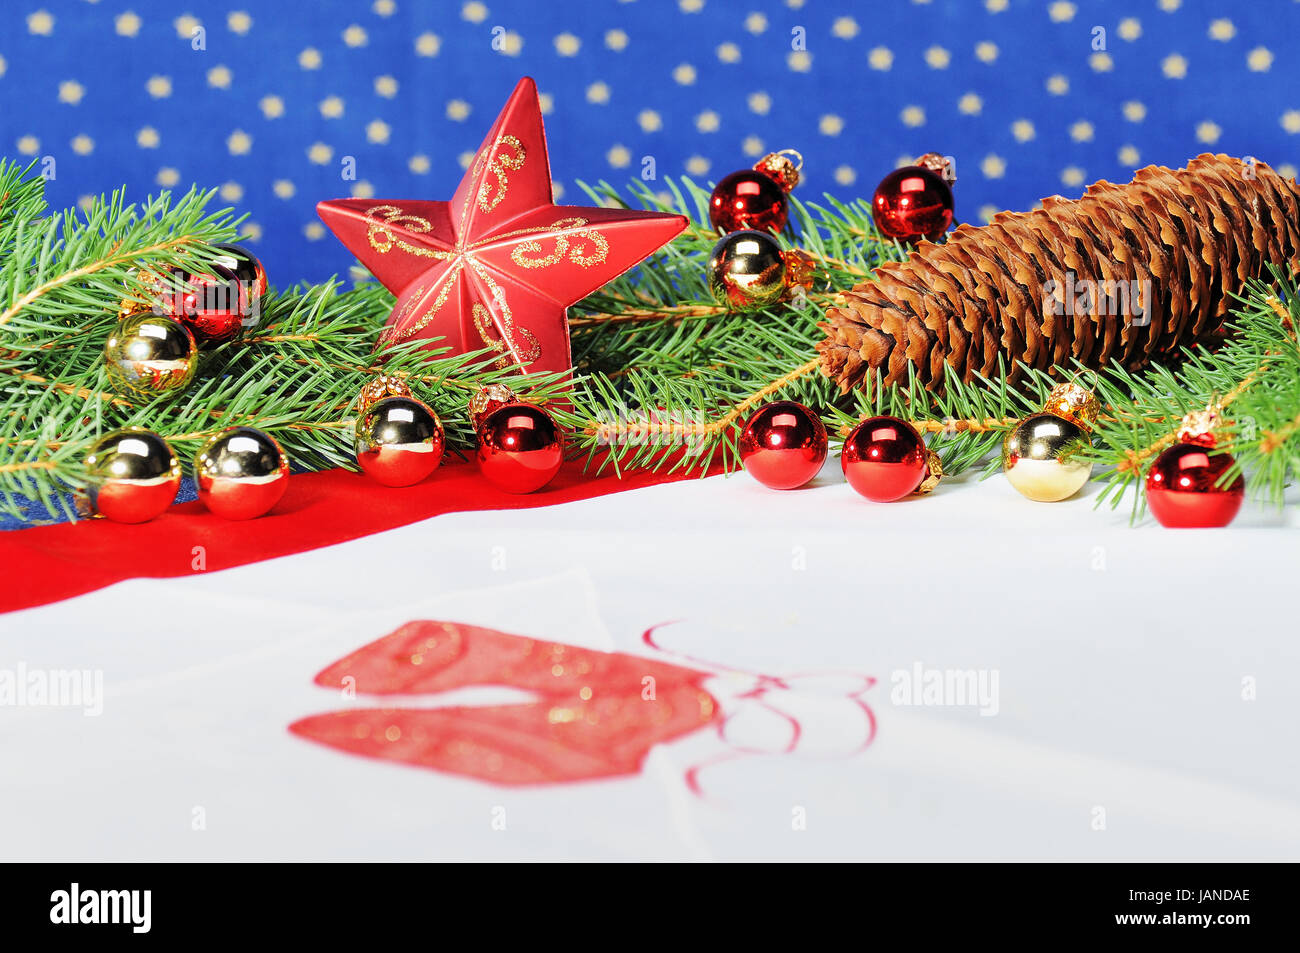 Weihnachtlich dekorierter Tisch mit Tannenzweigen, Christbaumkugeln und Stern Stock Photo